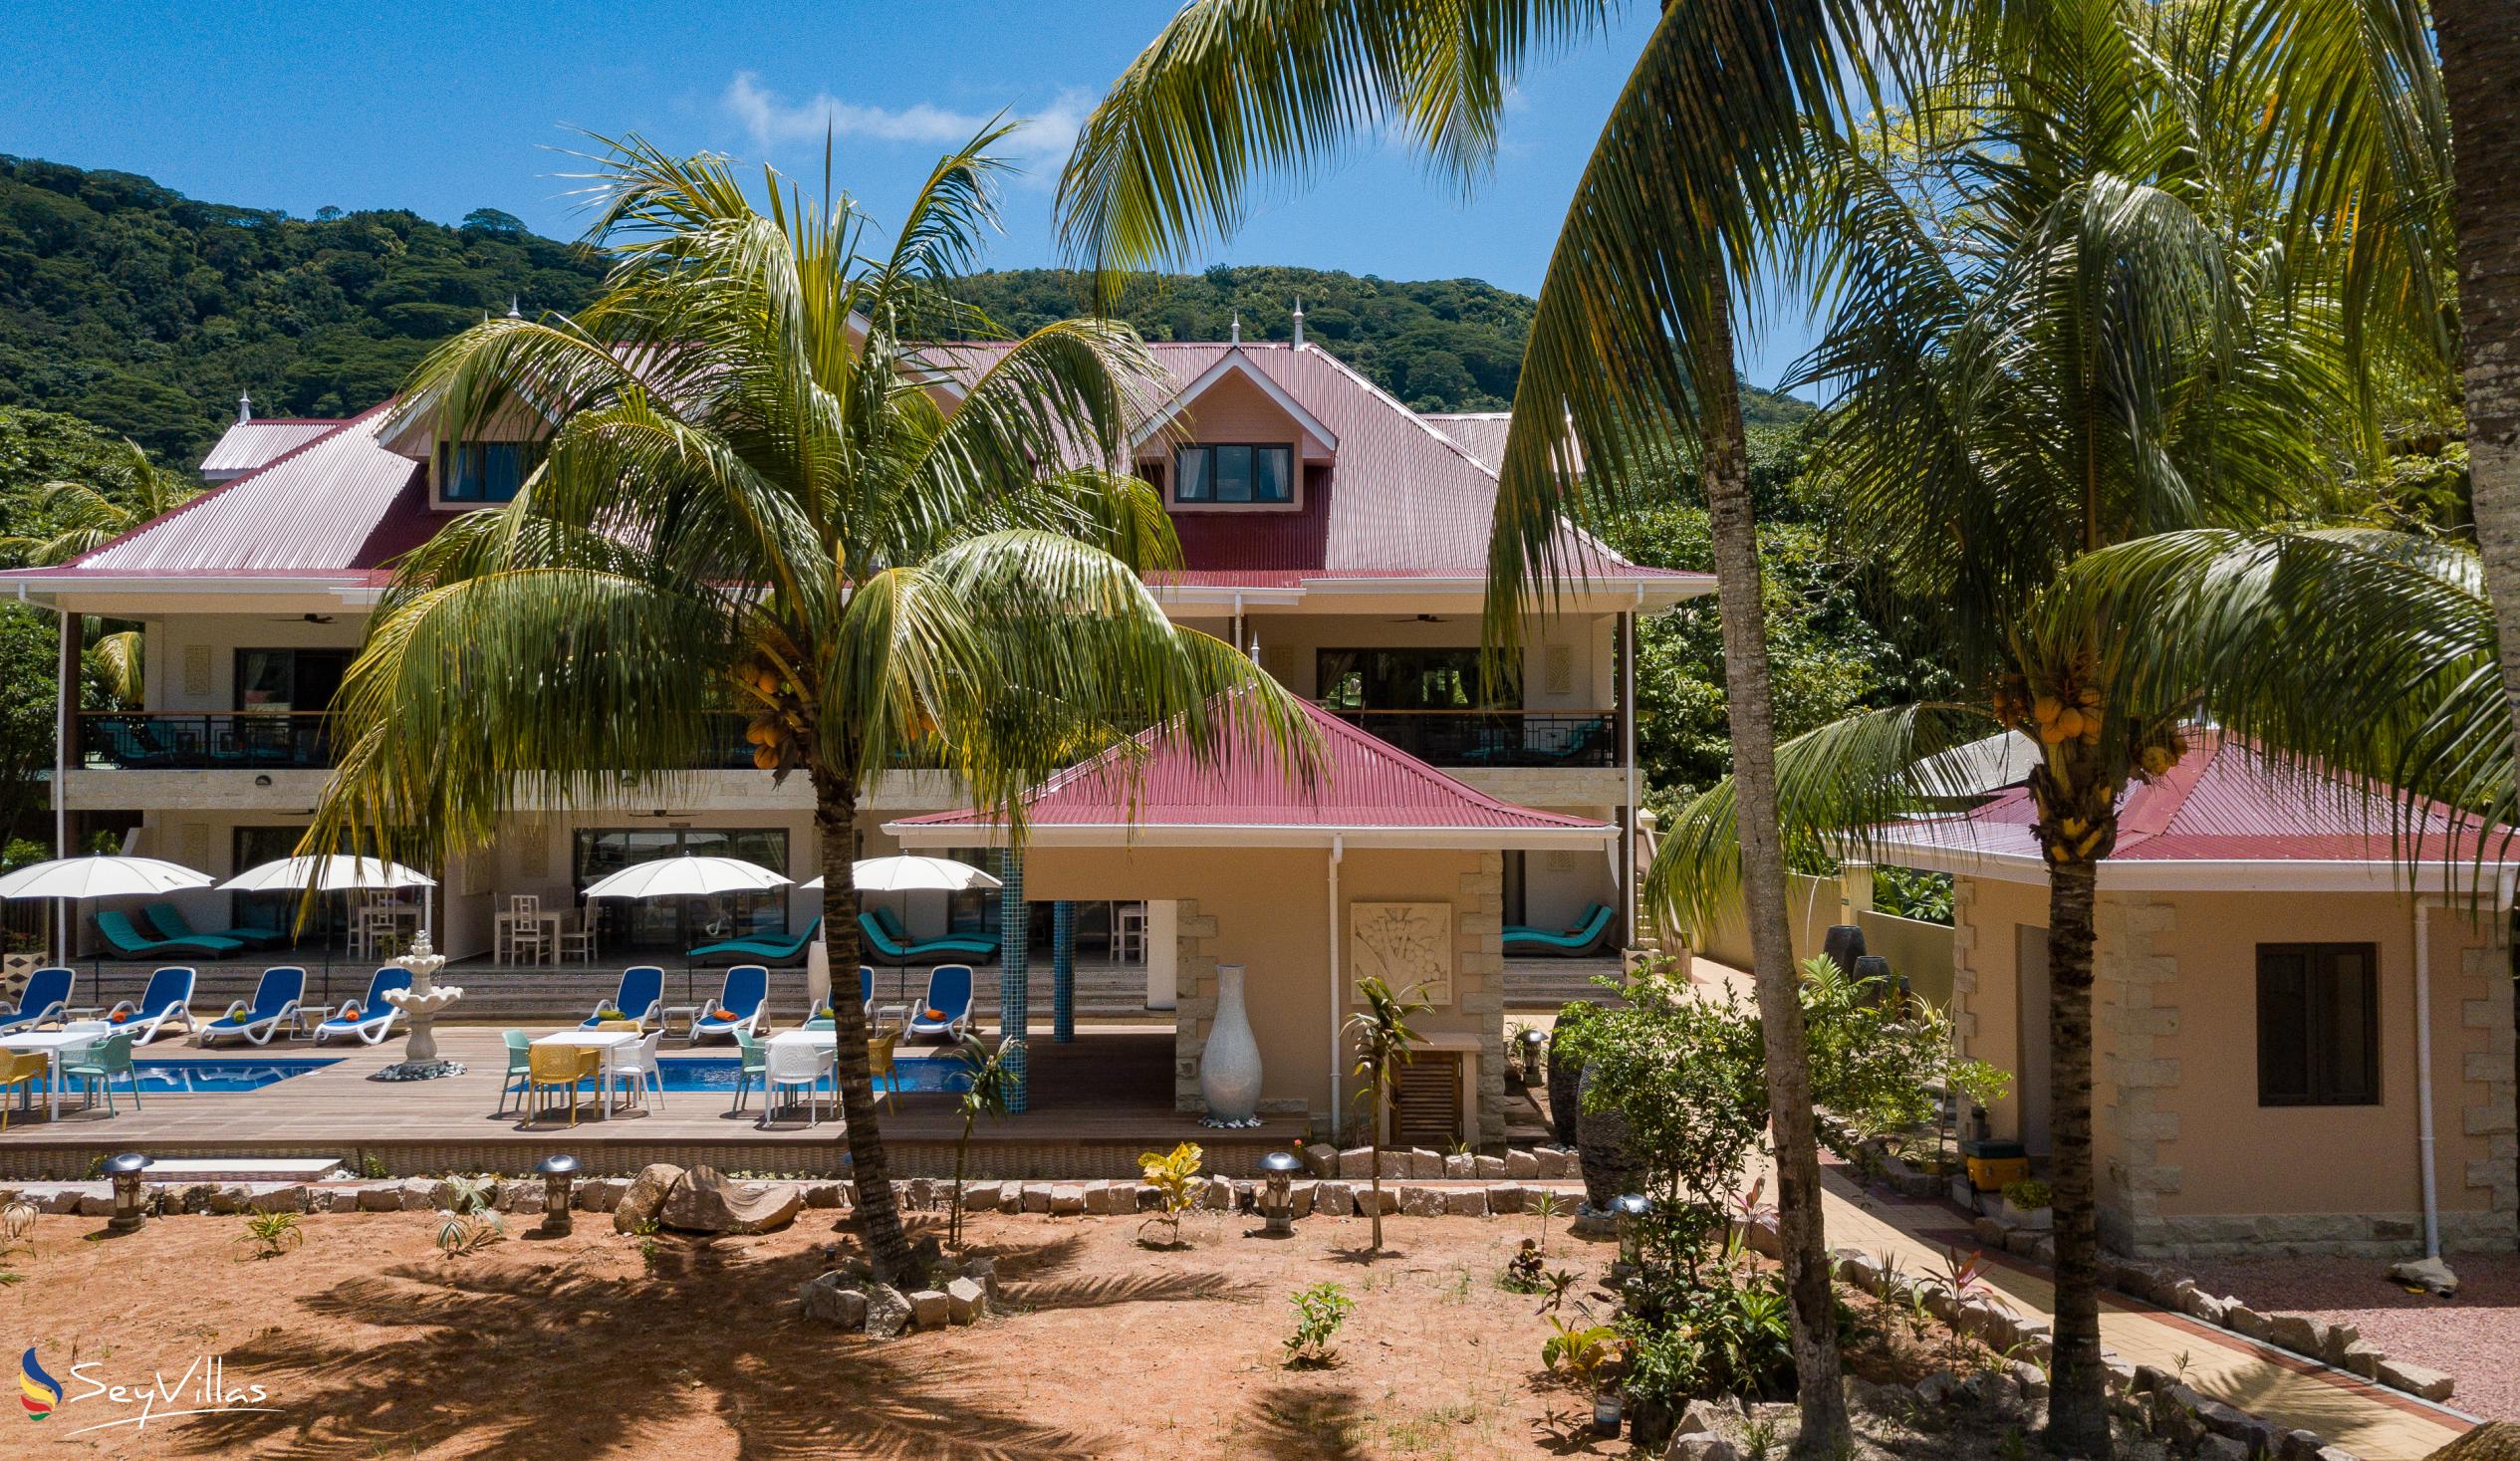 Photo 153: Casa de Leela - Outdoor area - La Digue (Seychelles)